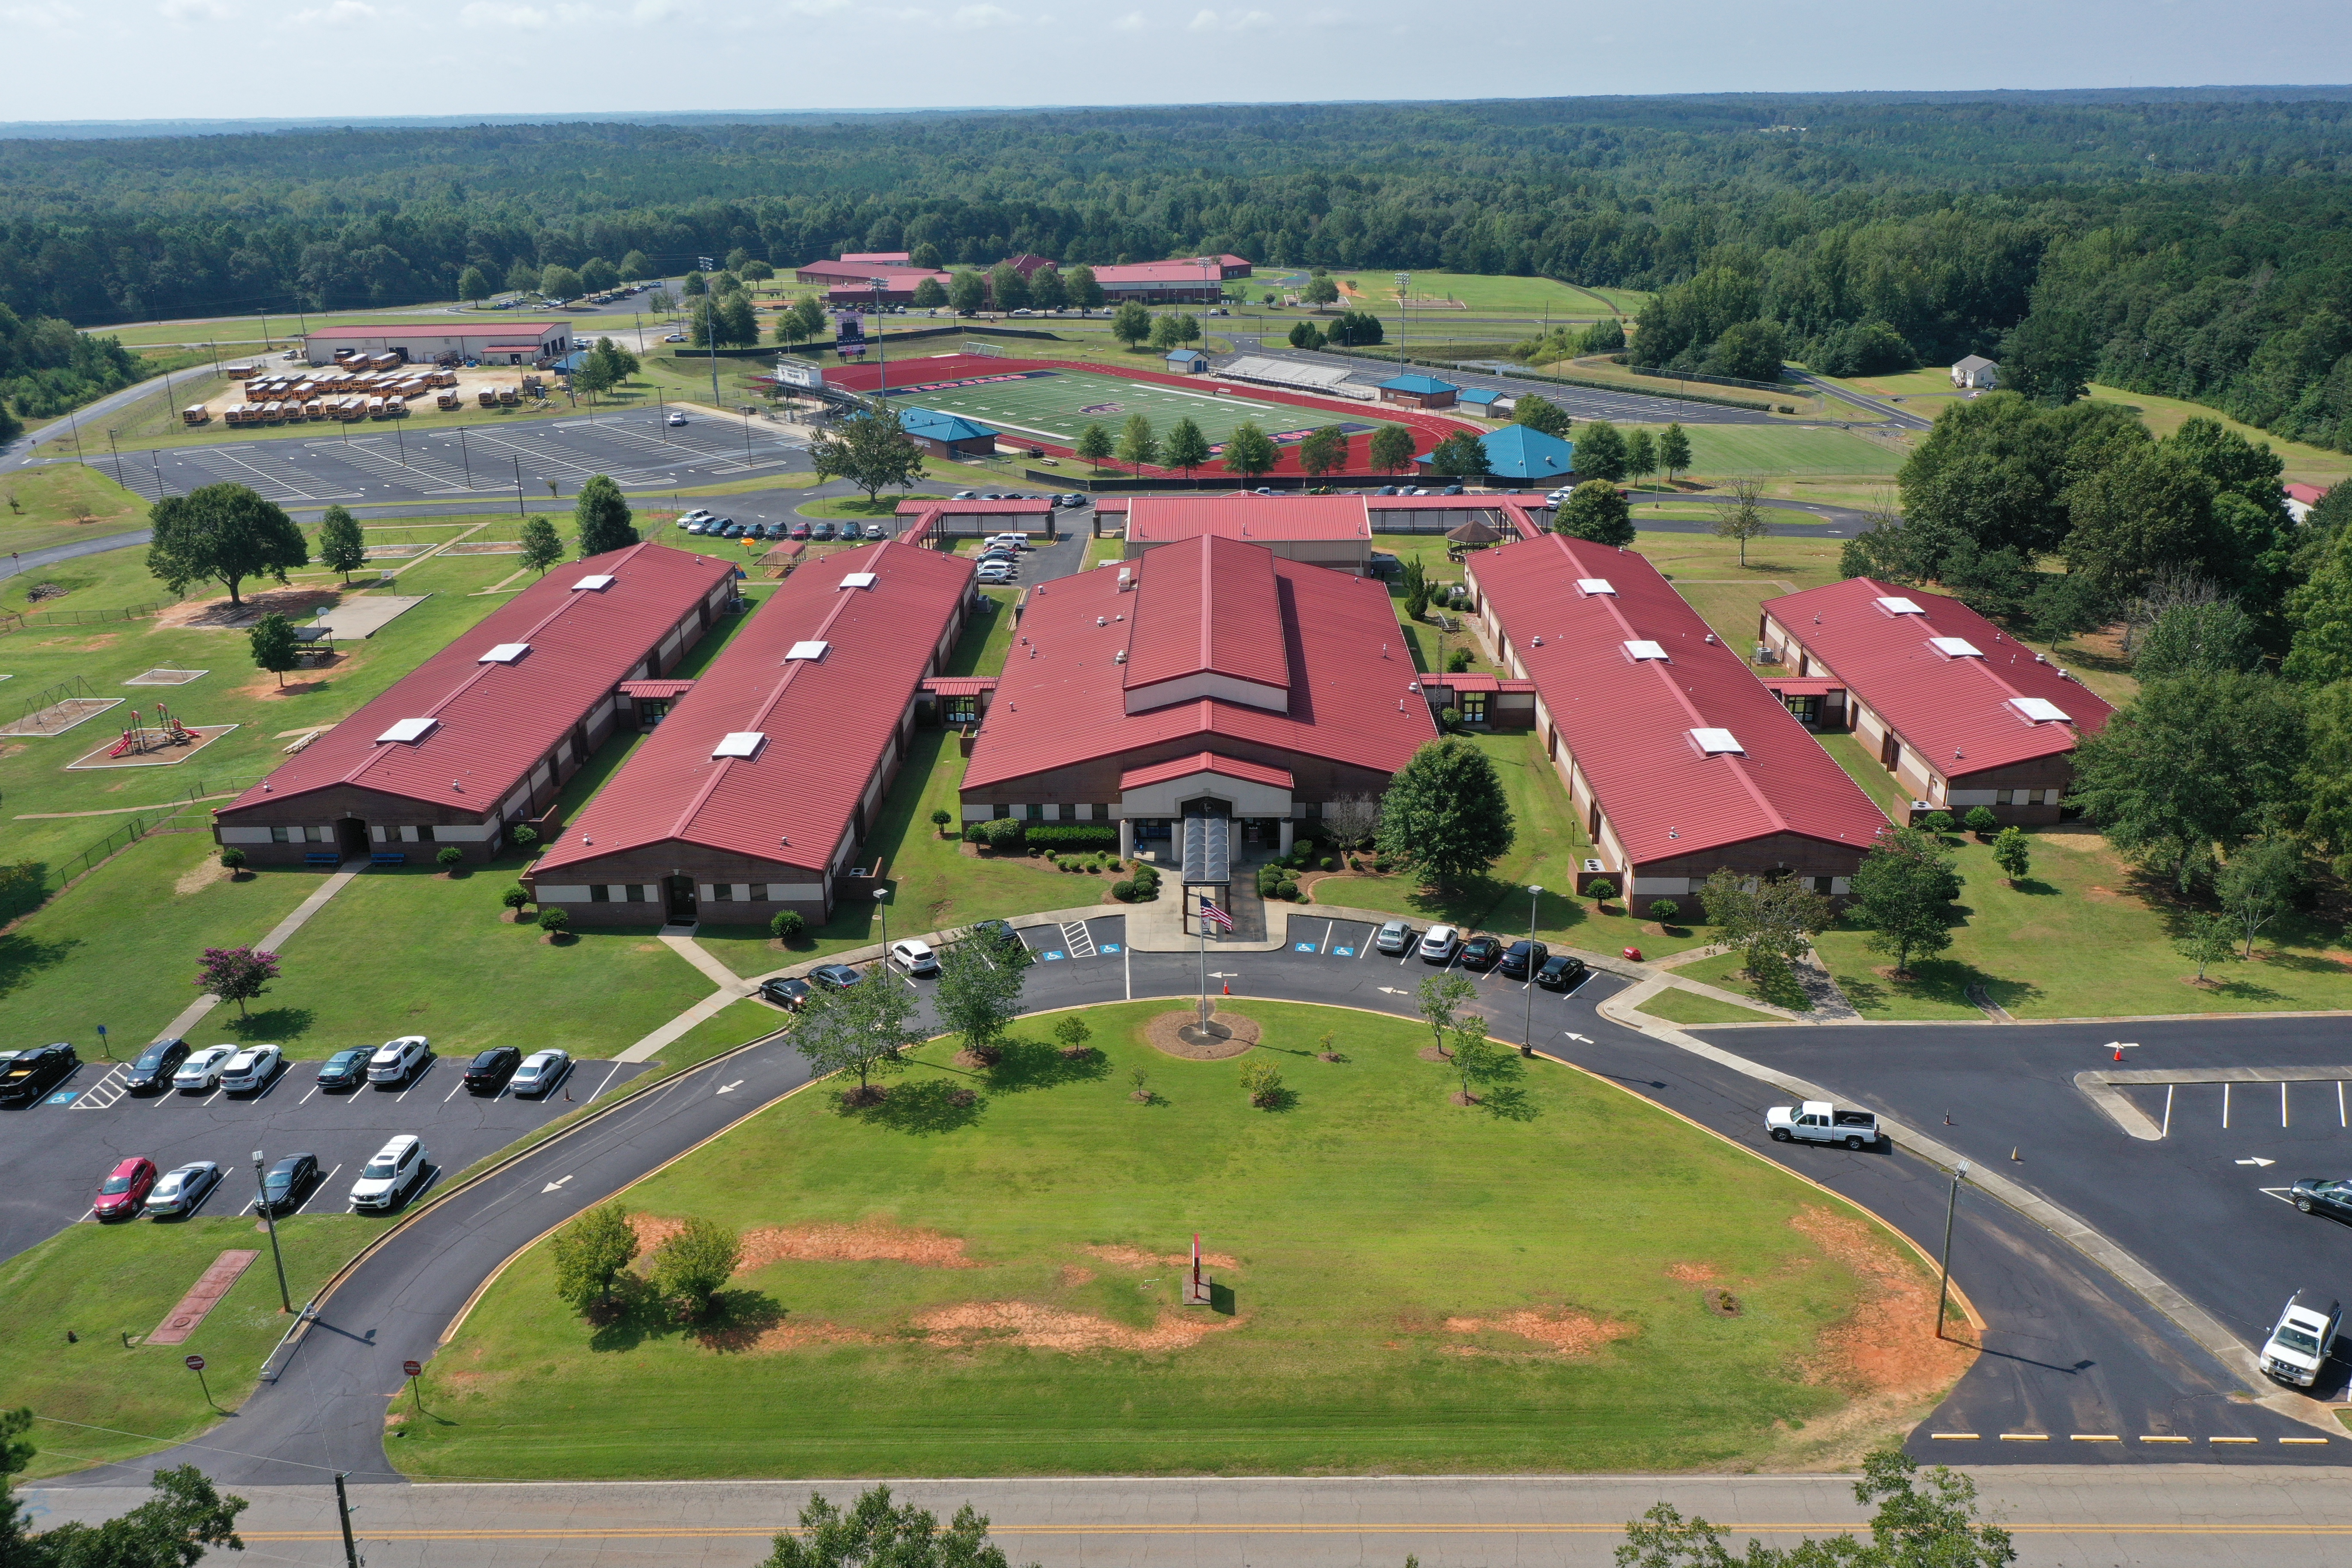 aerial shot of school